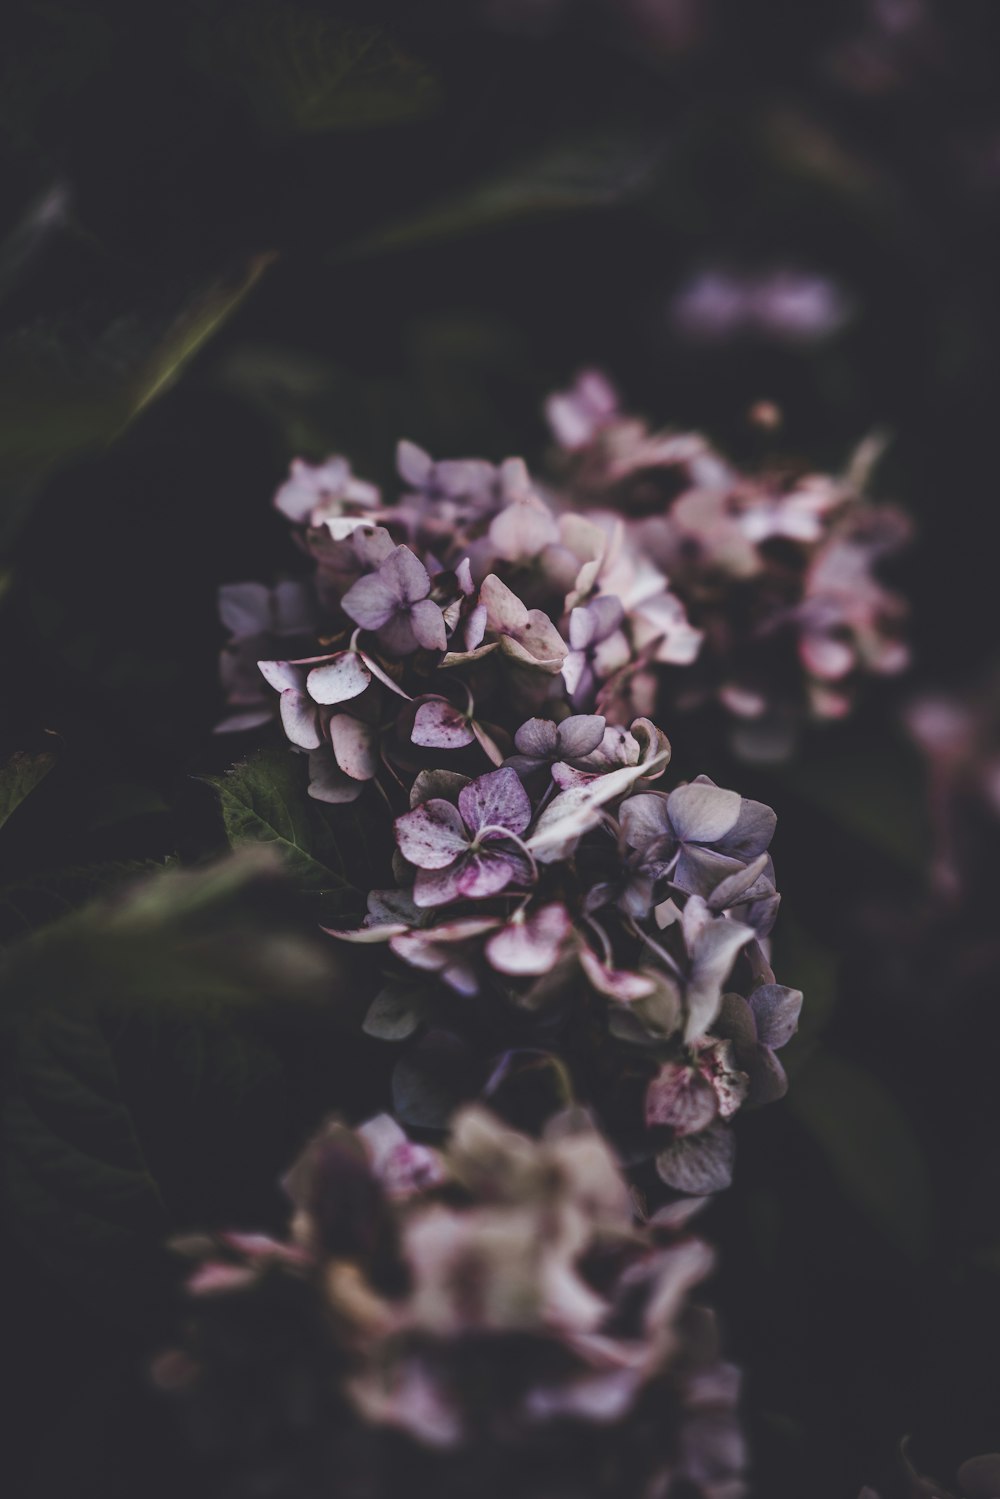 Photographie close-0up de fleurs aux pétales violets